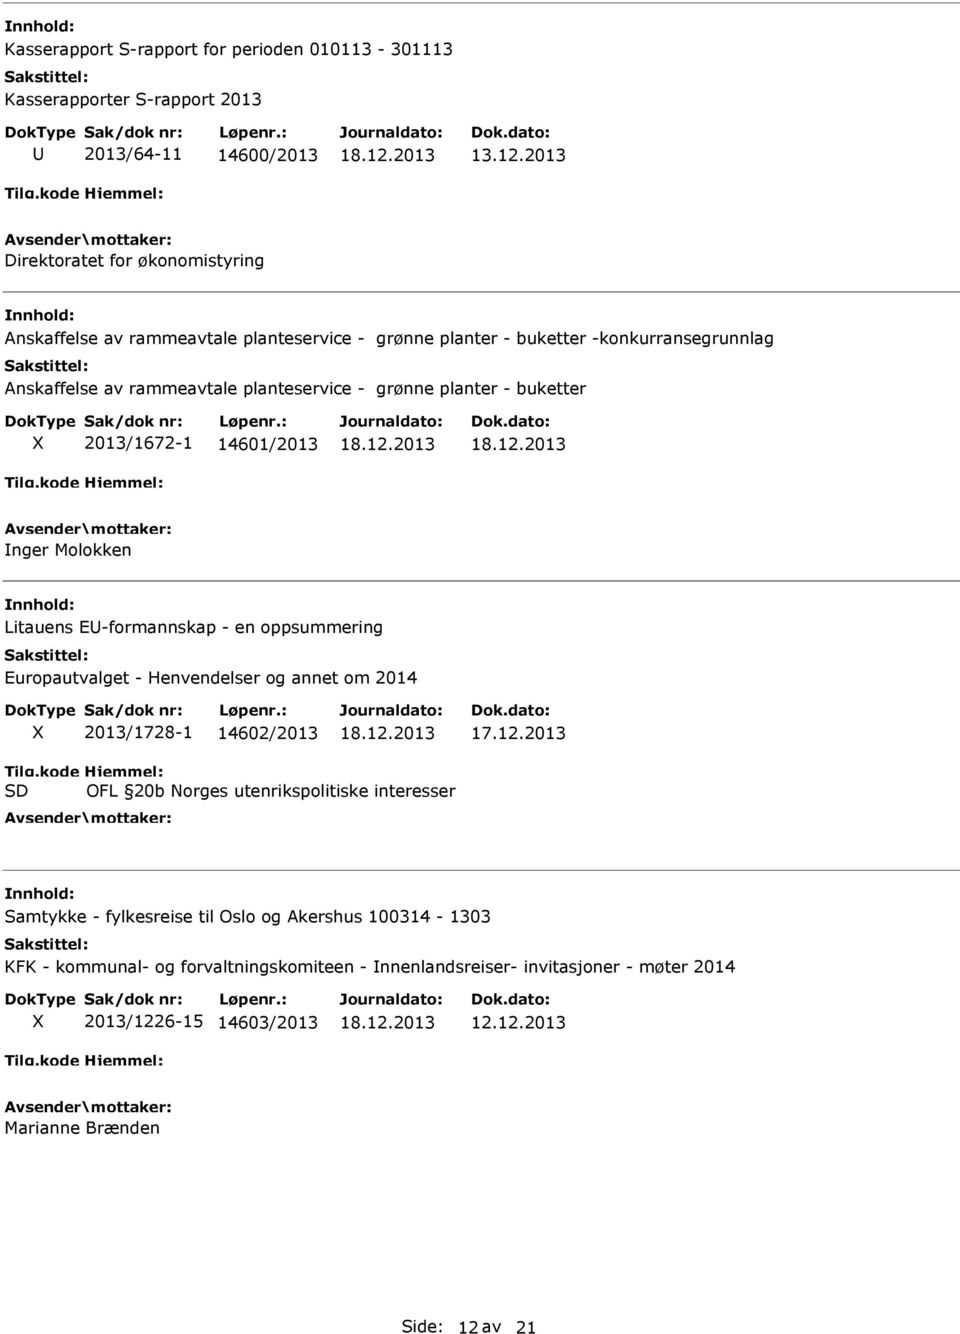 grønne planter - buketter 2013/1672-1 14601/2013 nger Molokken Litauens E-formannskap - en oppsummering Europautvalget - Henvendelser og annet om 2014 2013/1728-1 14602/2013